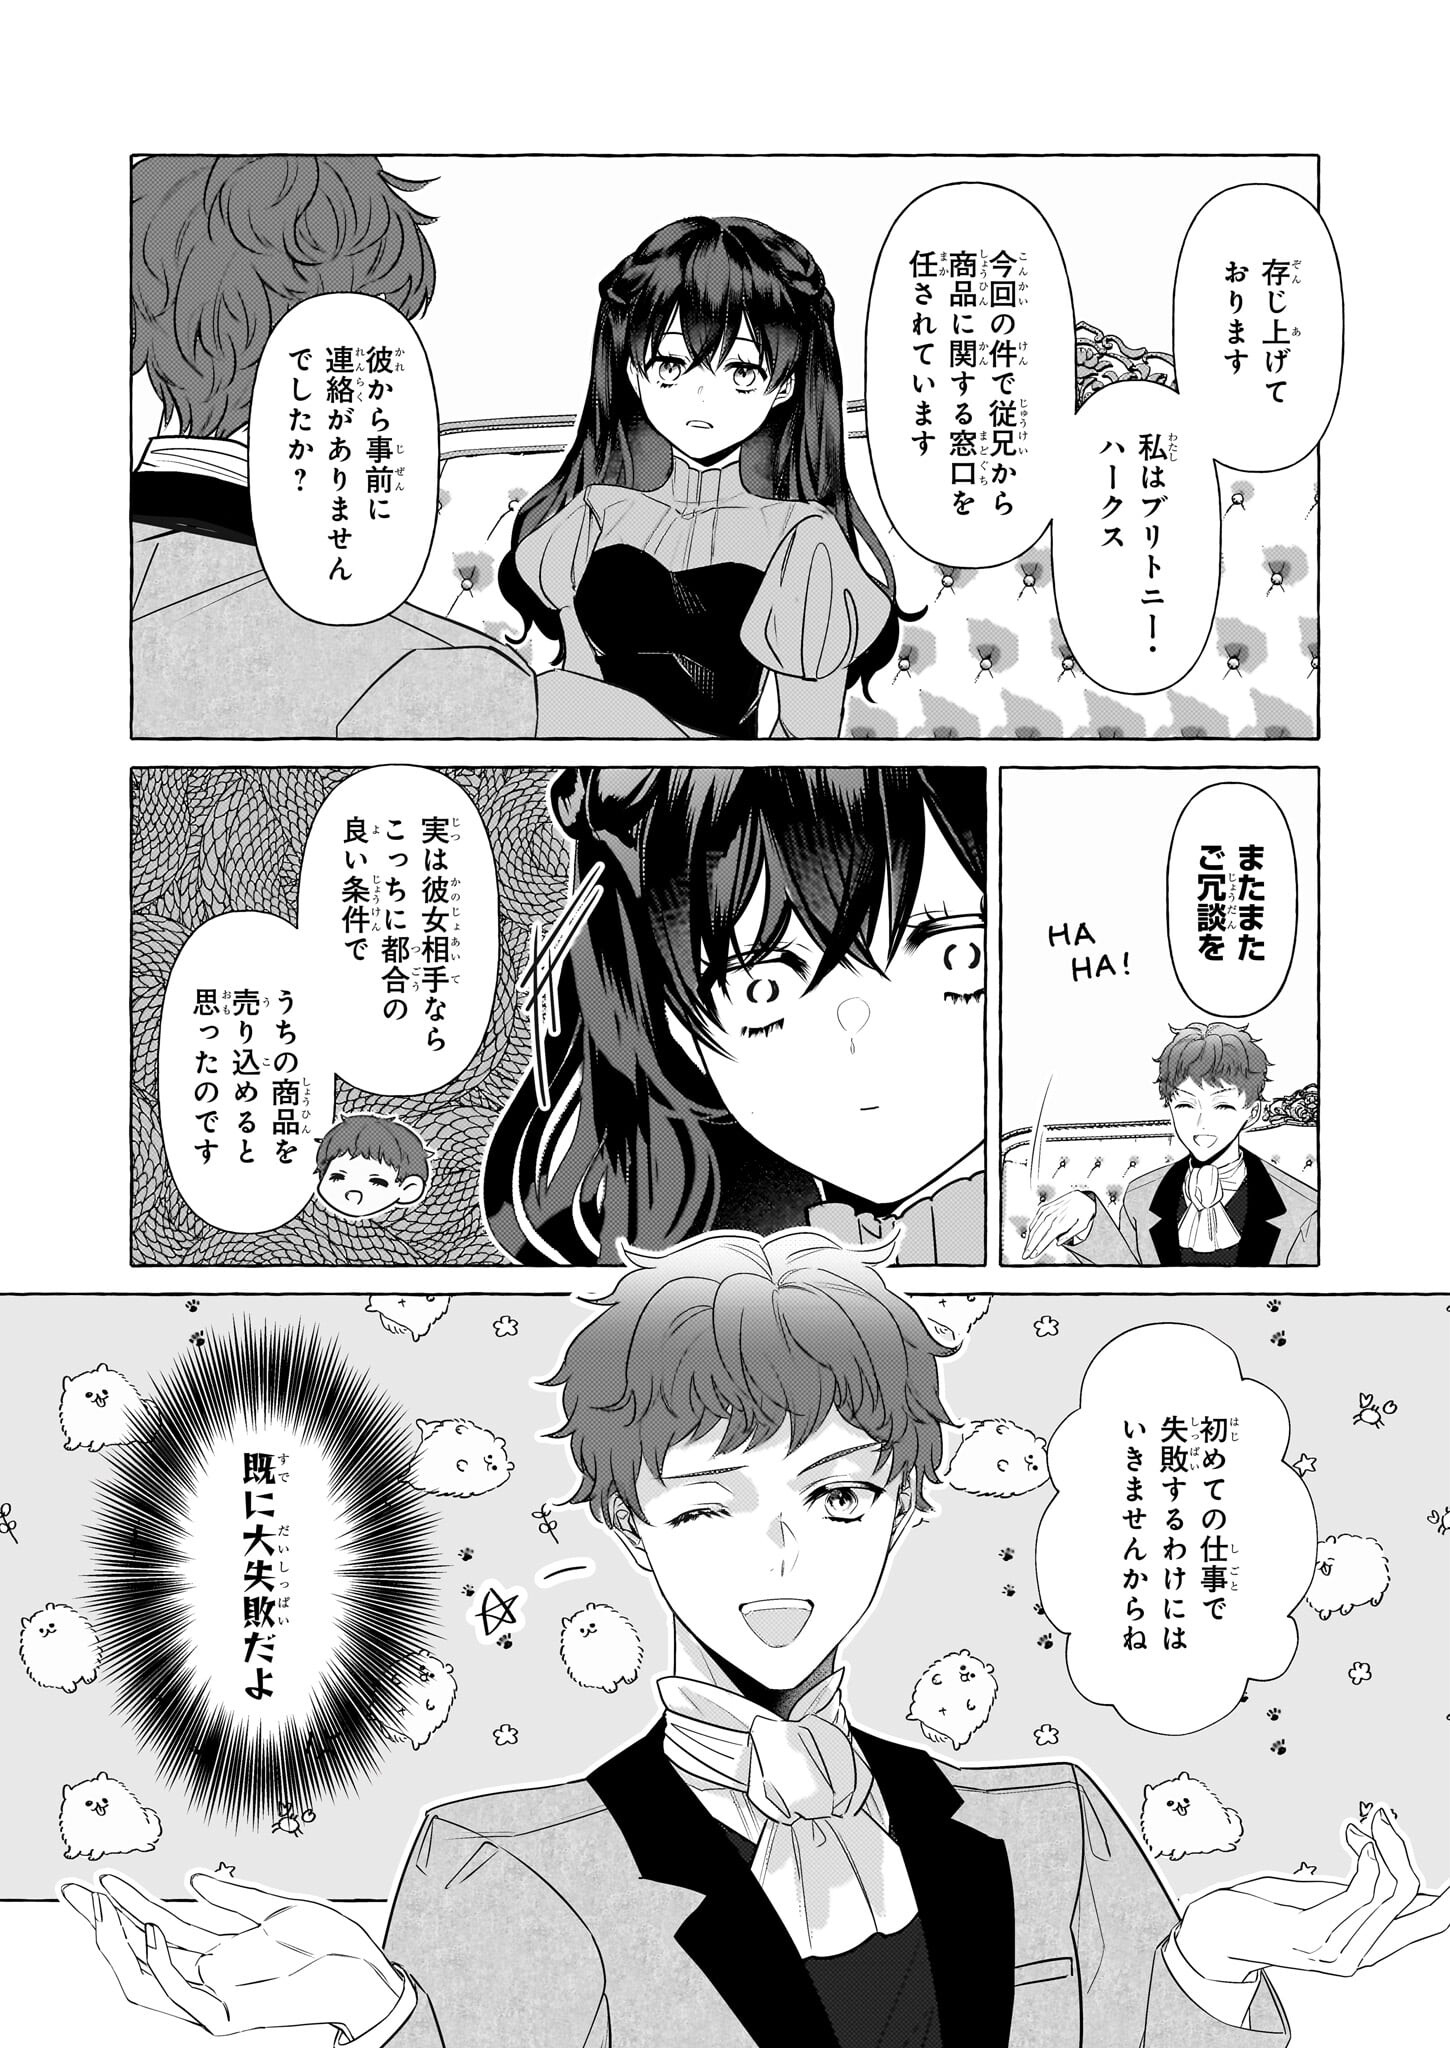 Tenseisaki ga Shoujo Manga no Shirobuta Reijou datta reBoooot! - Chapter 32 - Page 2